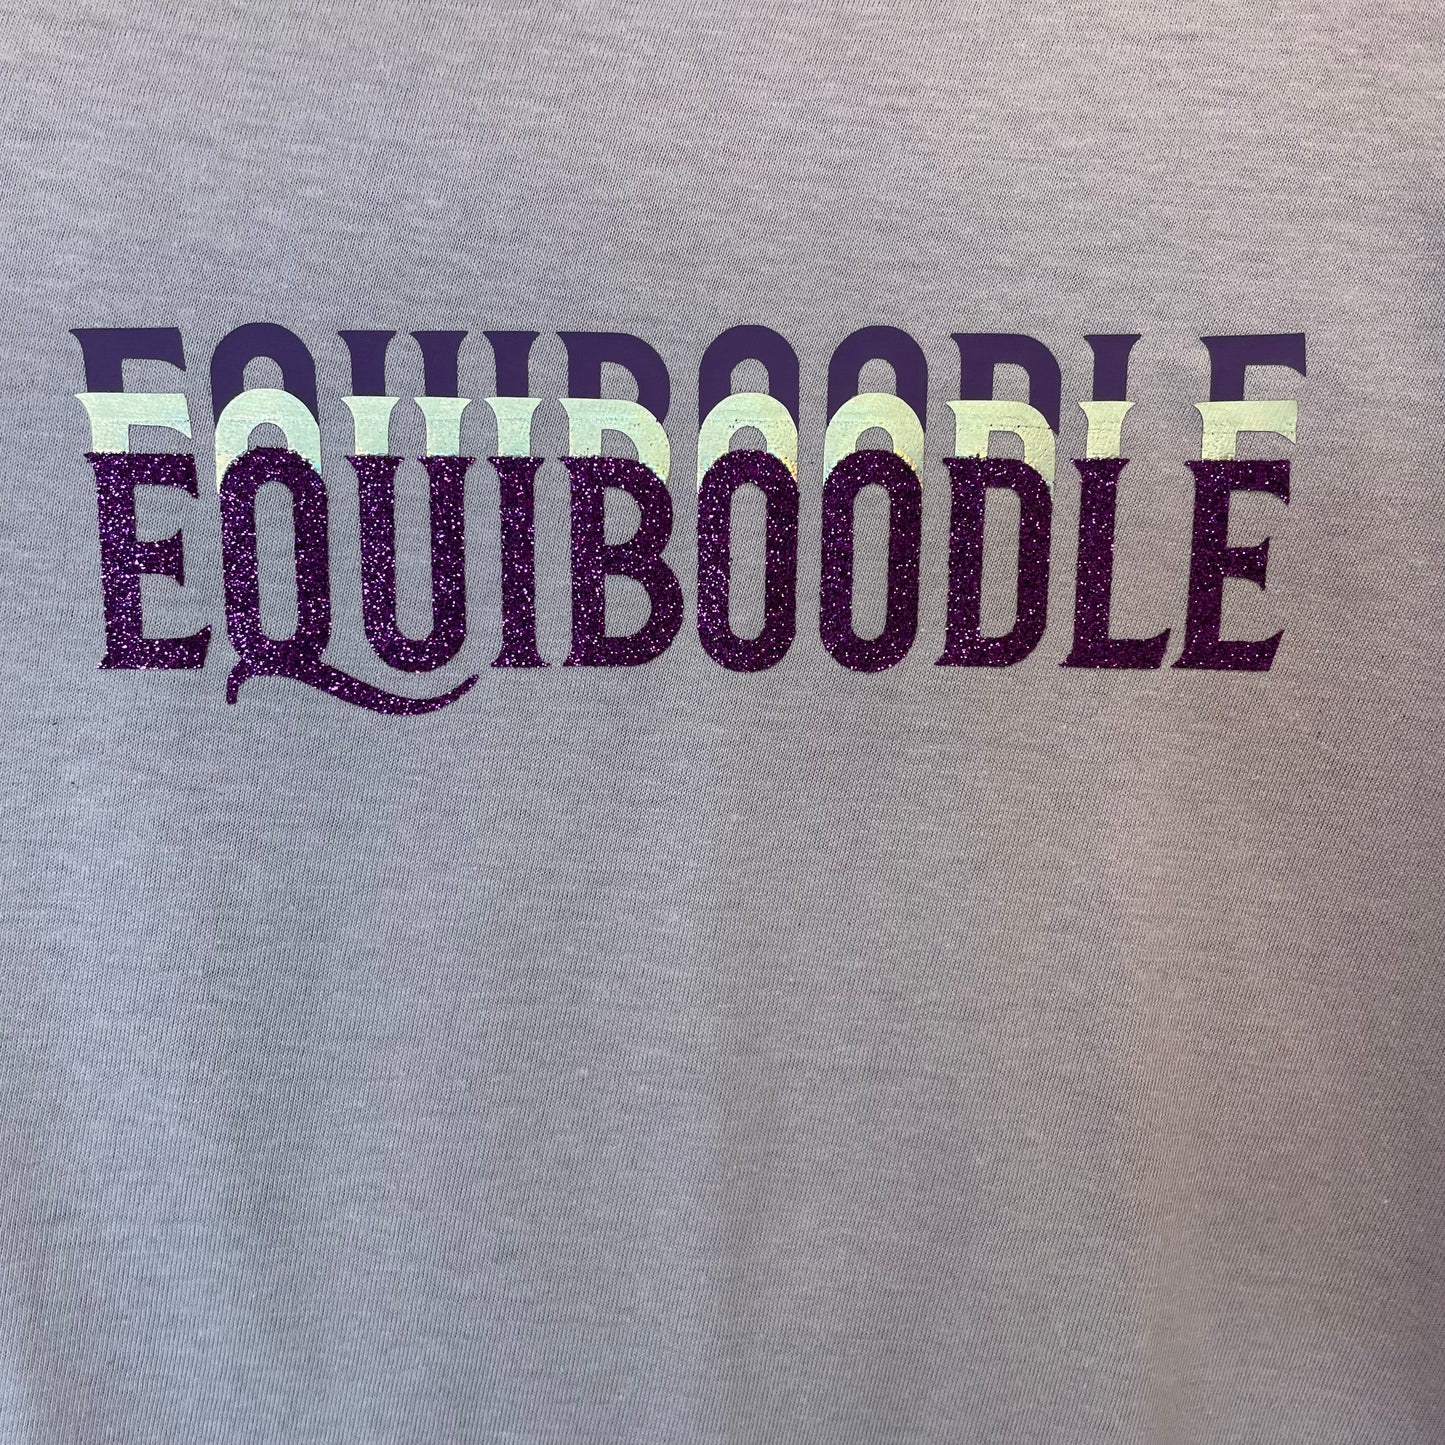 Equiboodle Hotshot T Shirt - Lavender Stratum